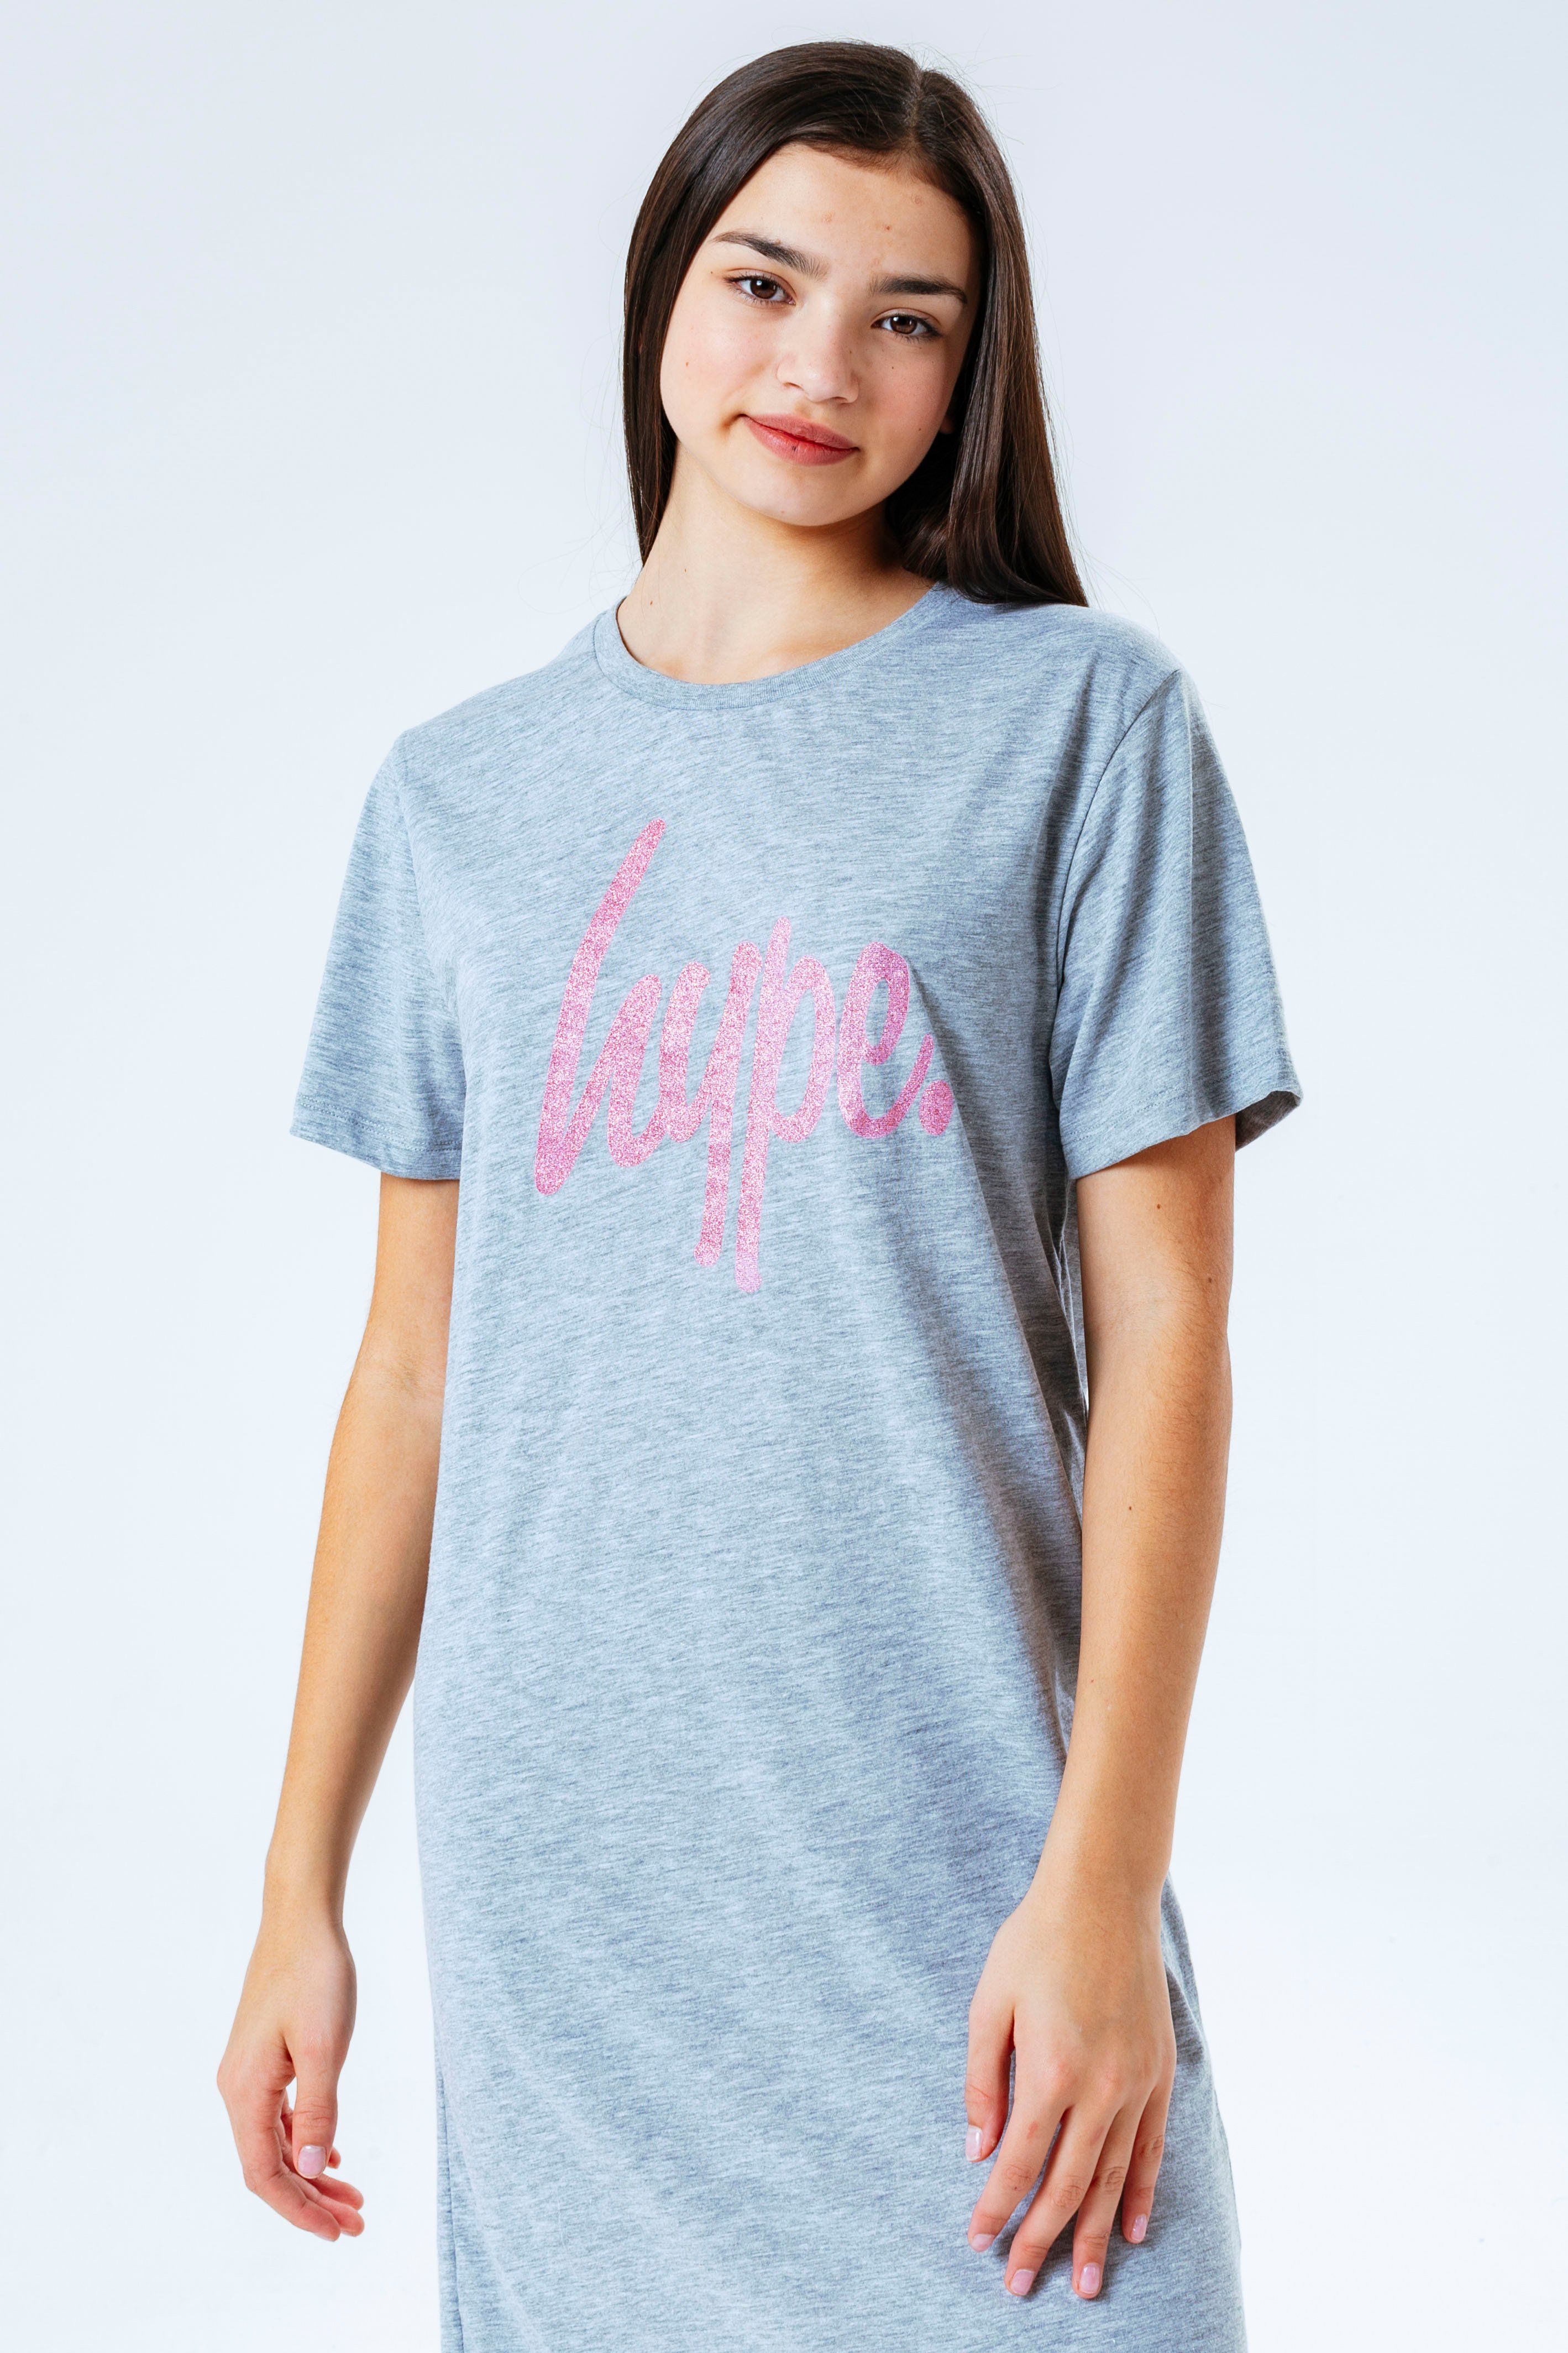 Hype Glitter Script Kids T-Shirt Dress